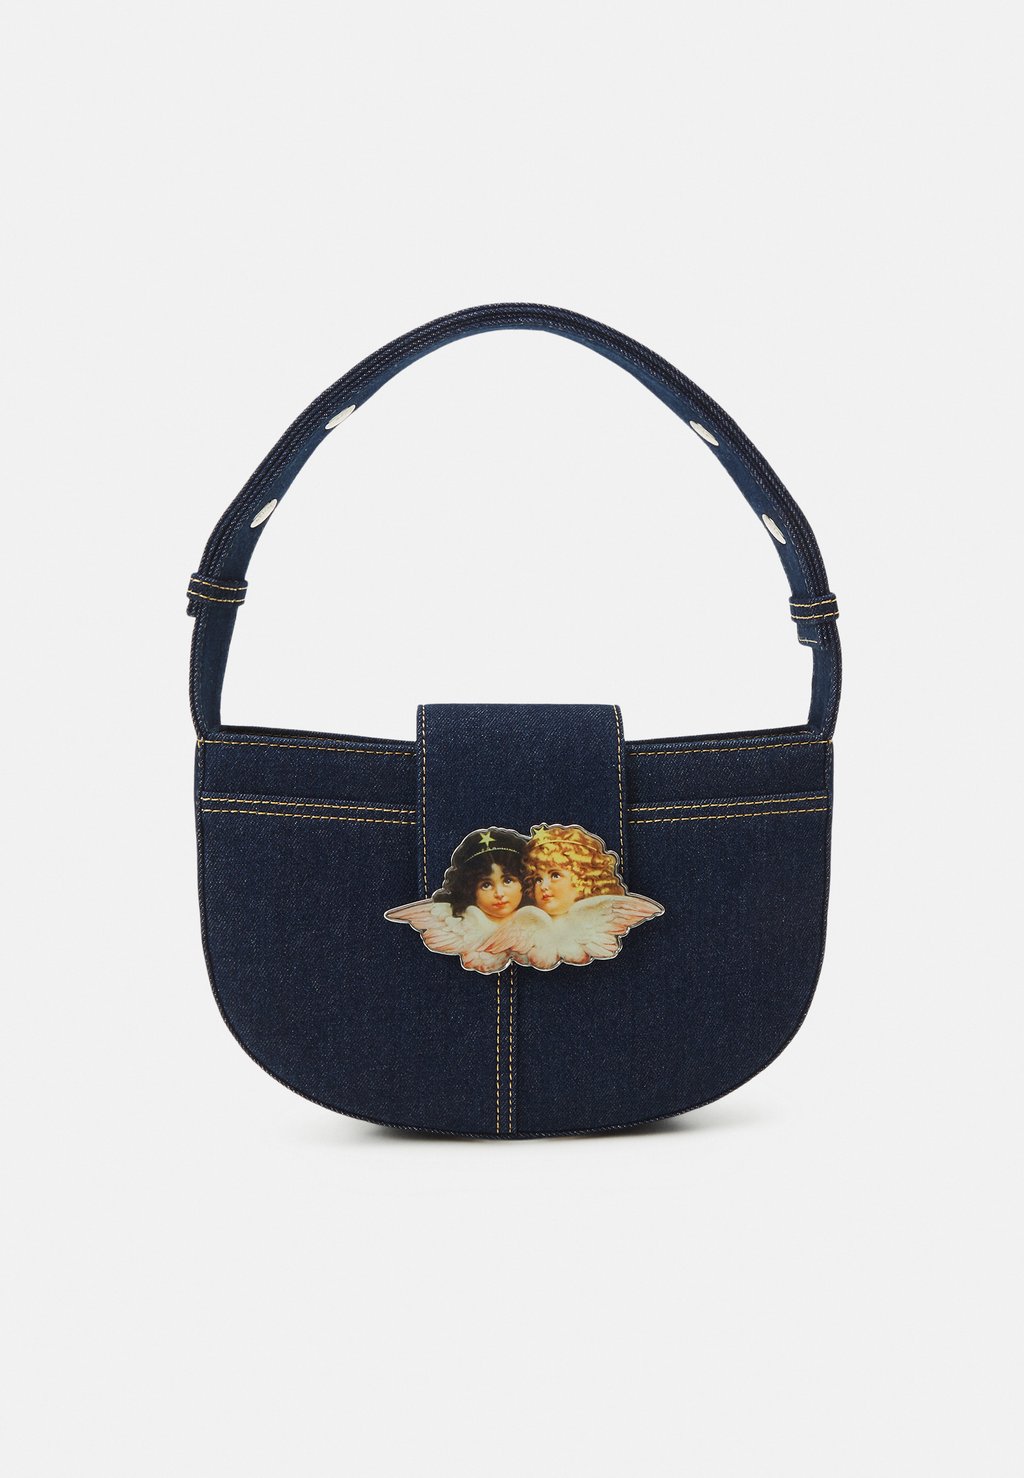 Сумочка Clasp Bag Fiorucci, цвет navy